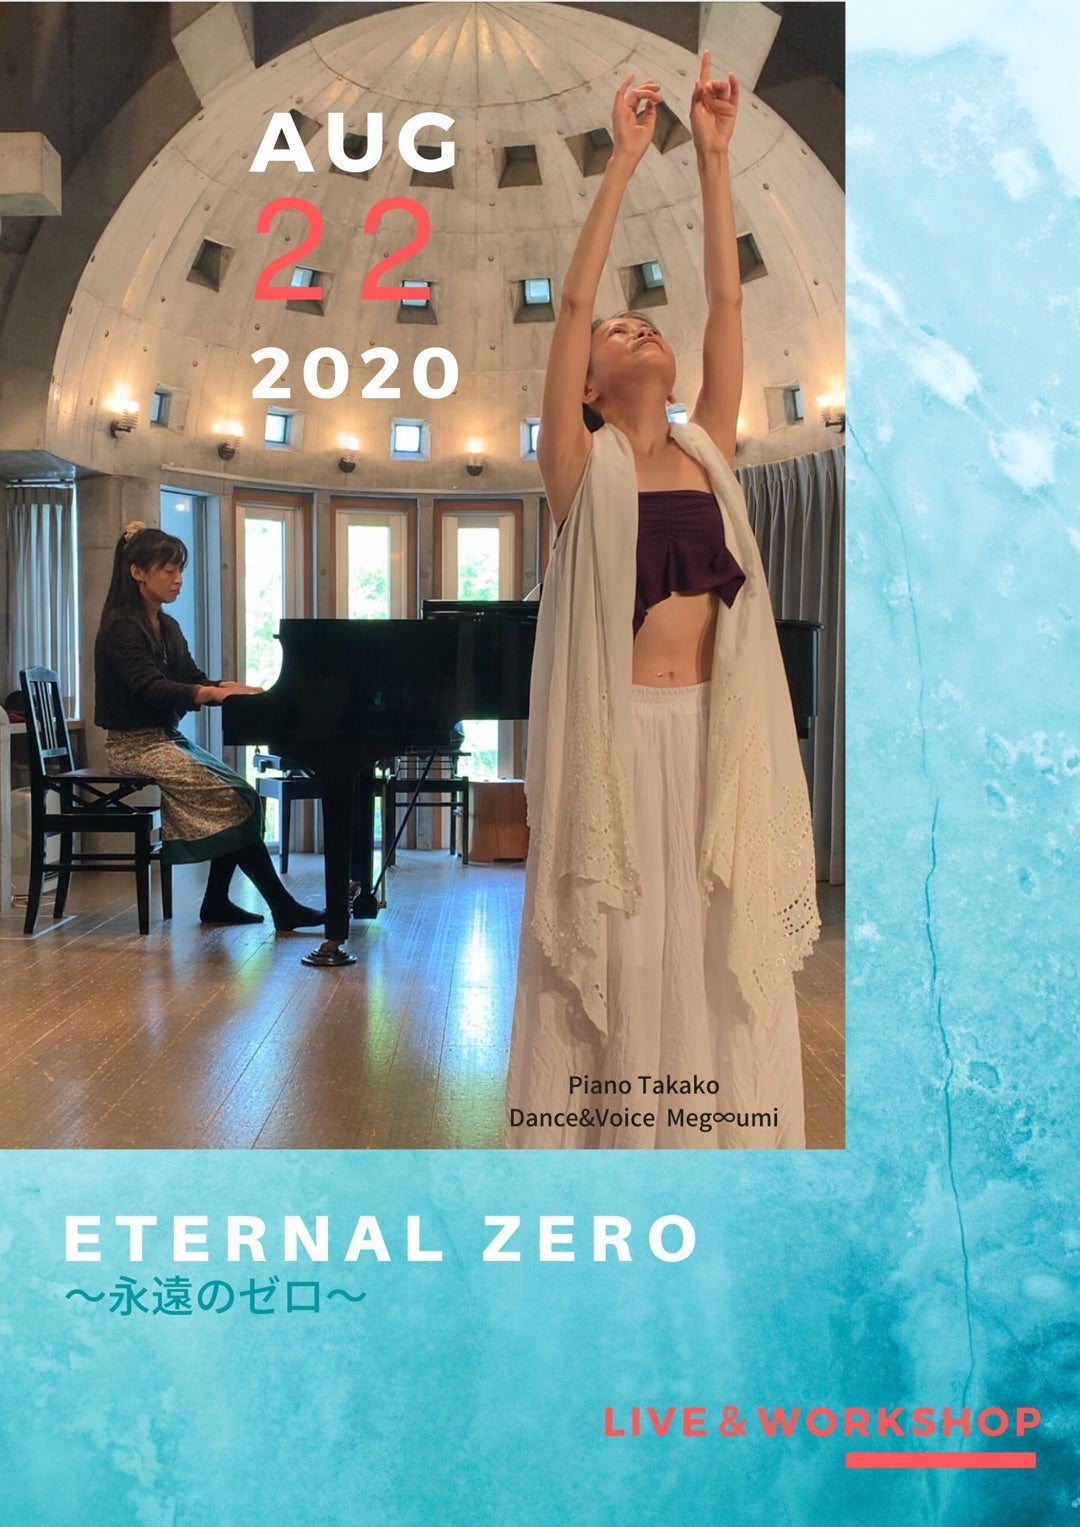 8月22日 Eternal Zero 永遠のゼロ Live Workshop 新生地球をアートする意識の目覚めへ